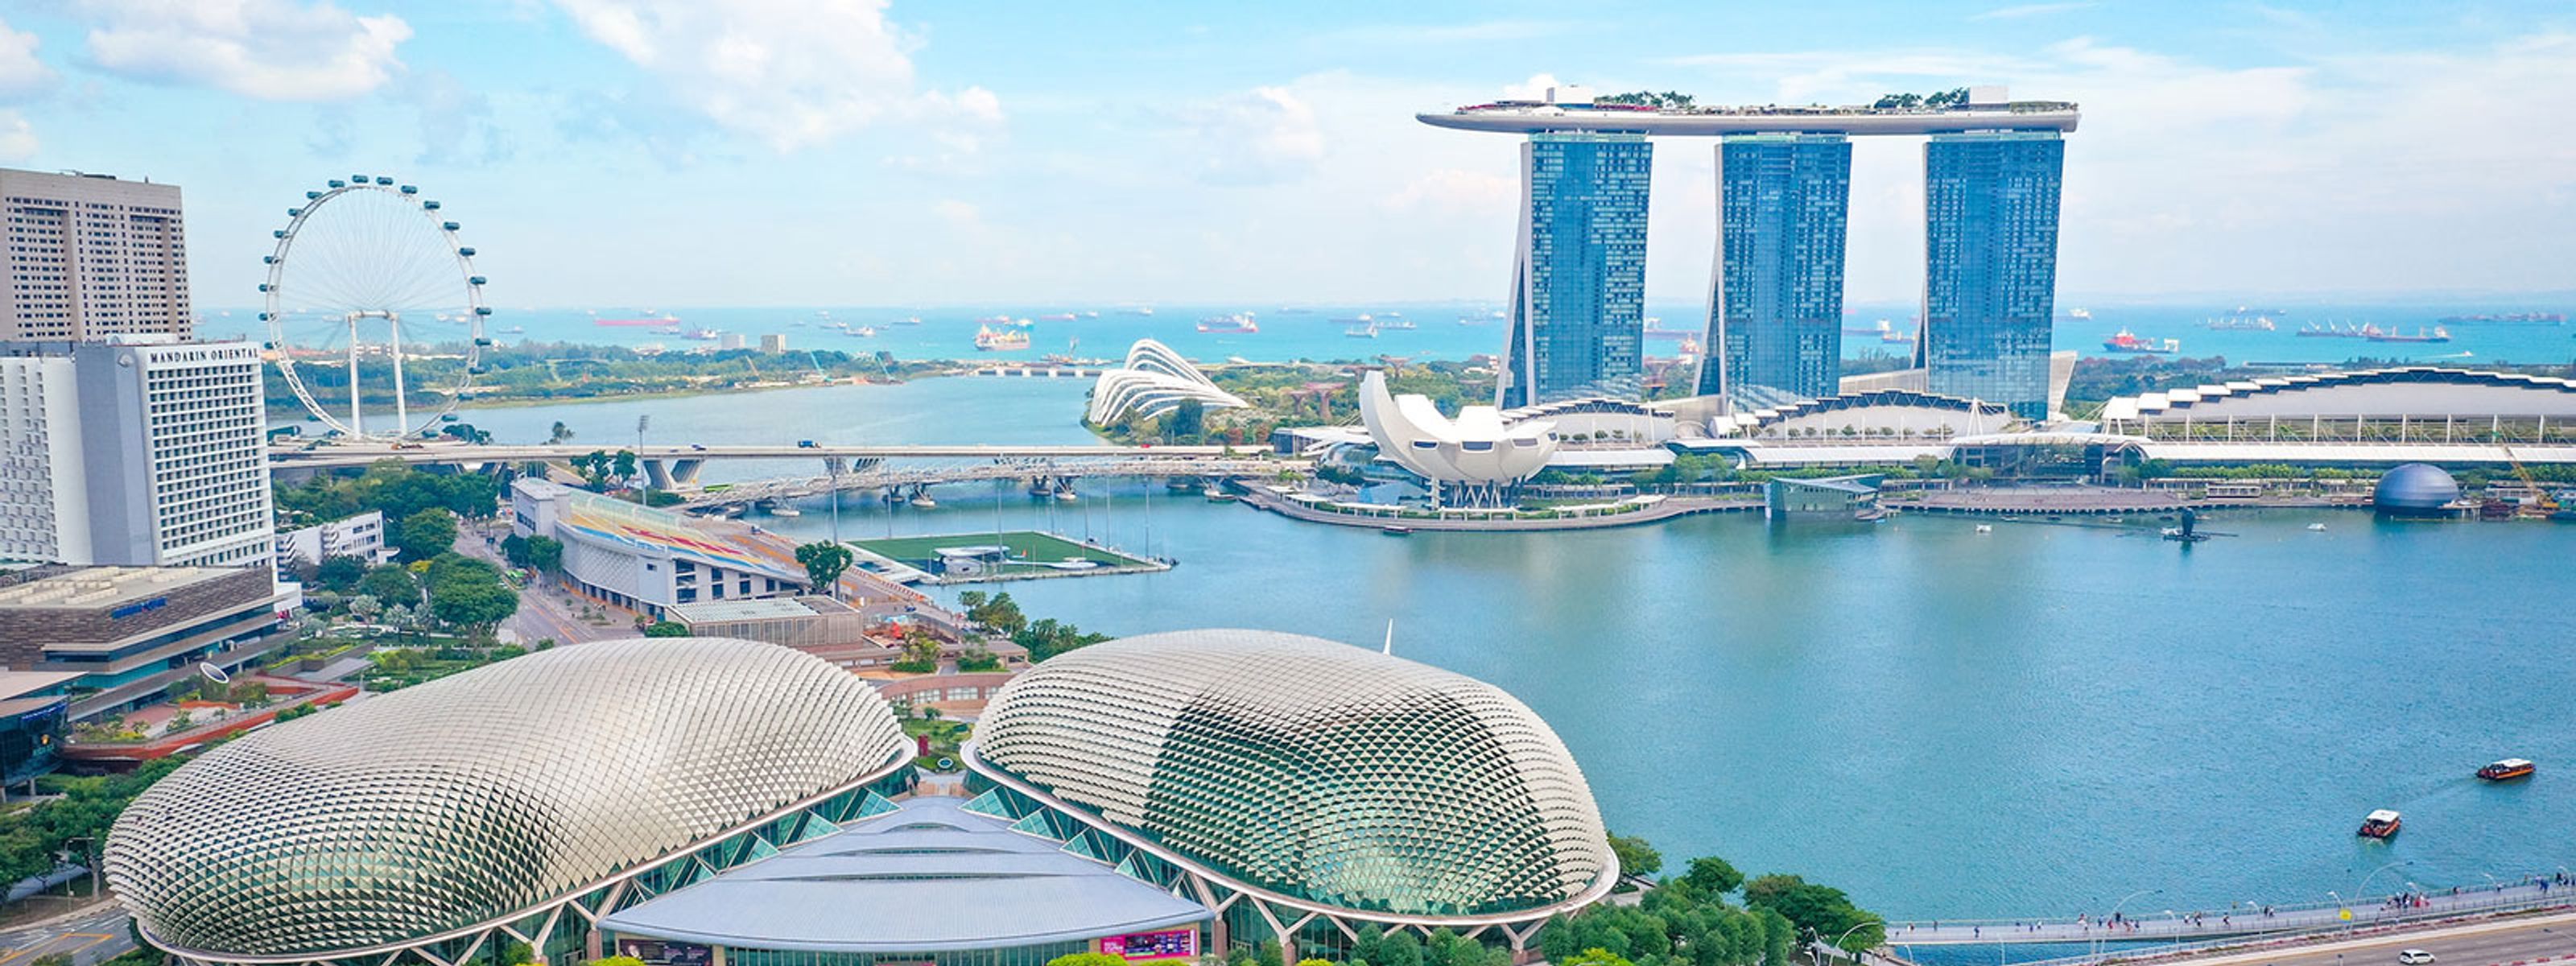 Singapur Panorama